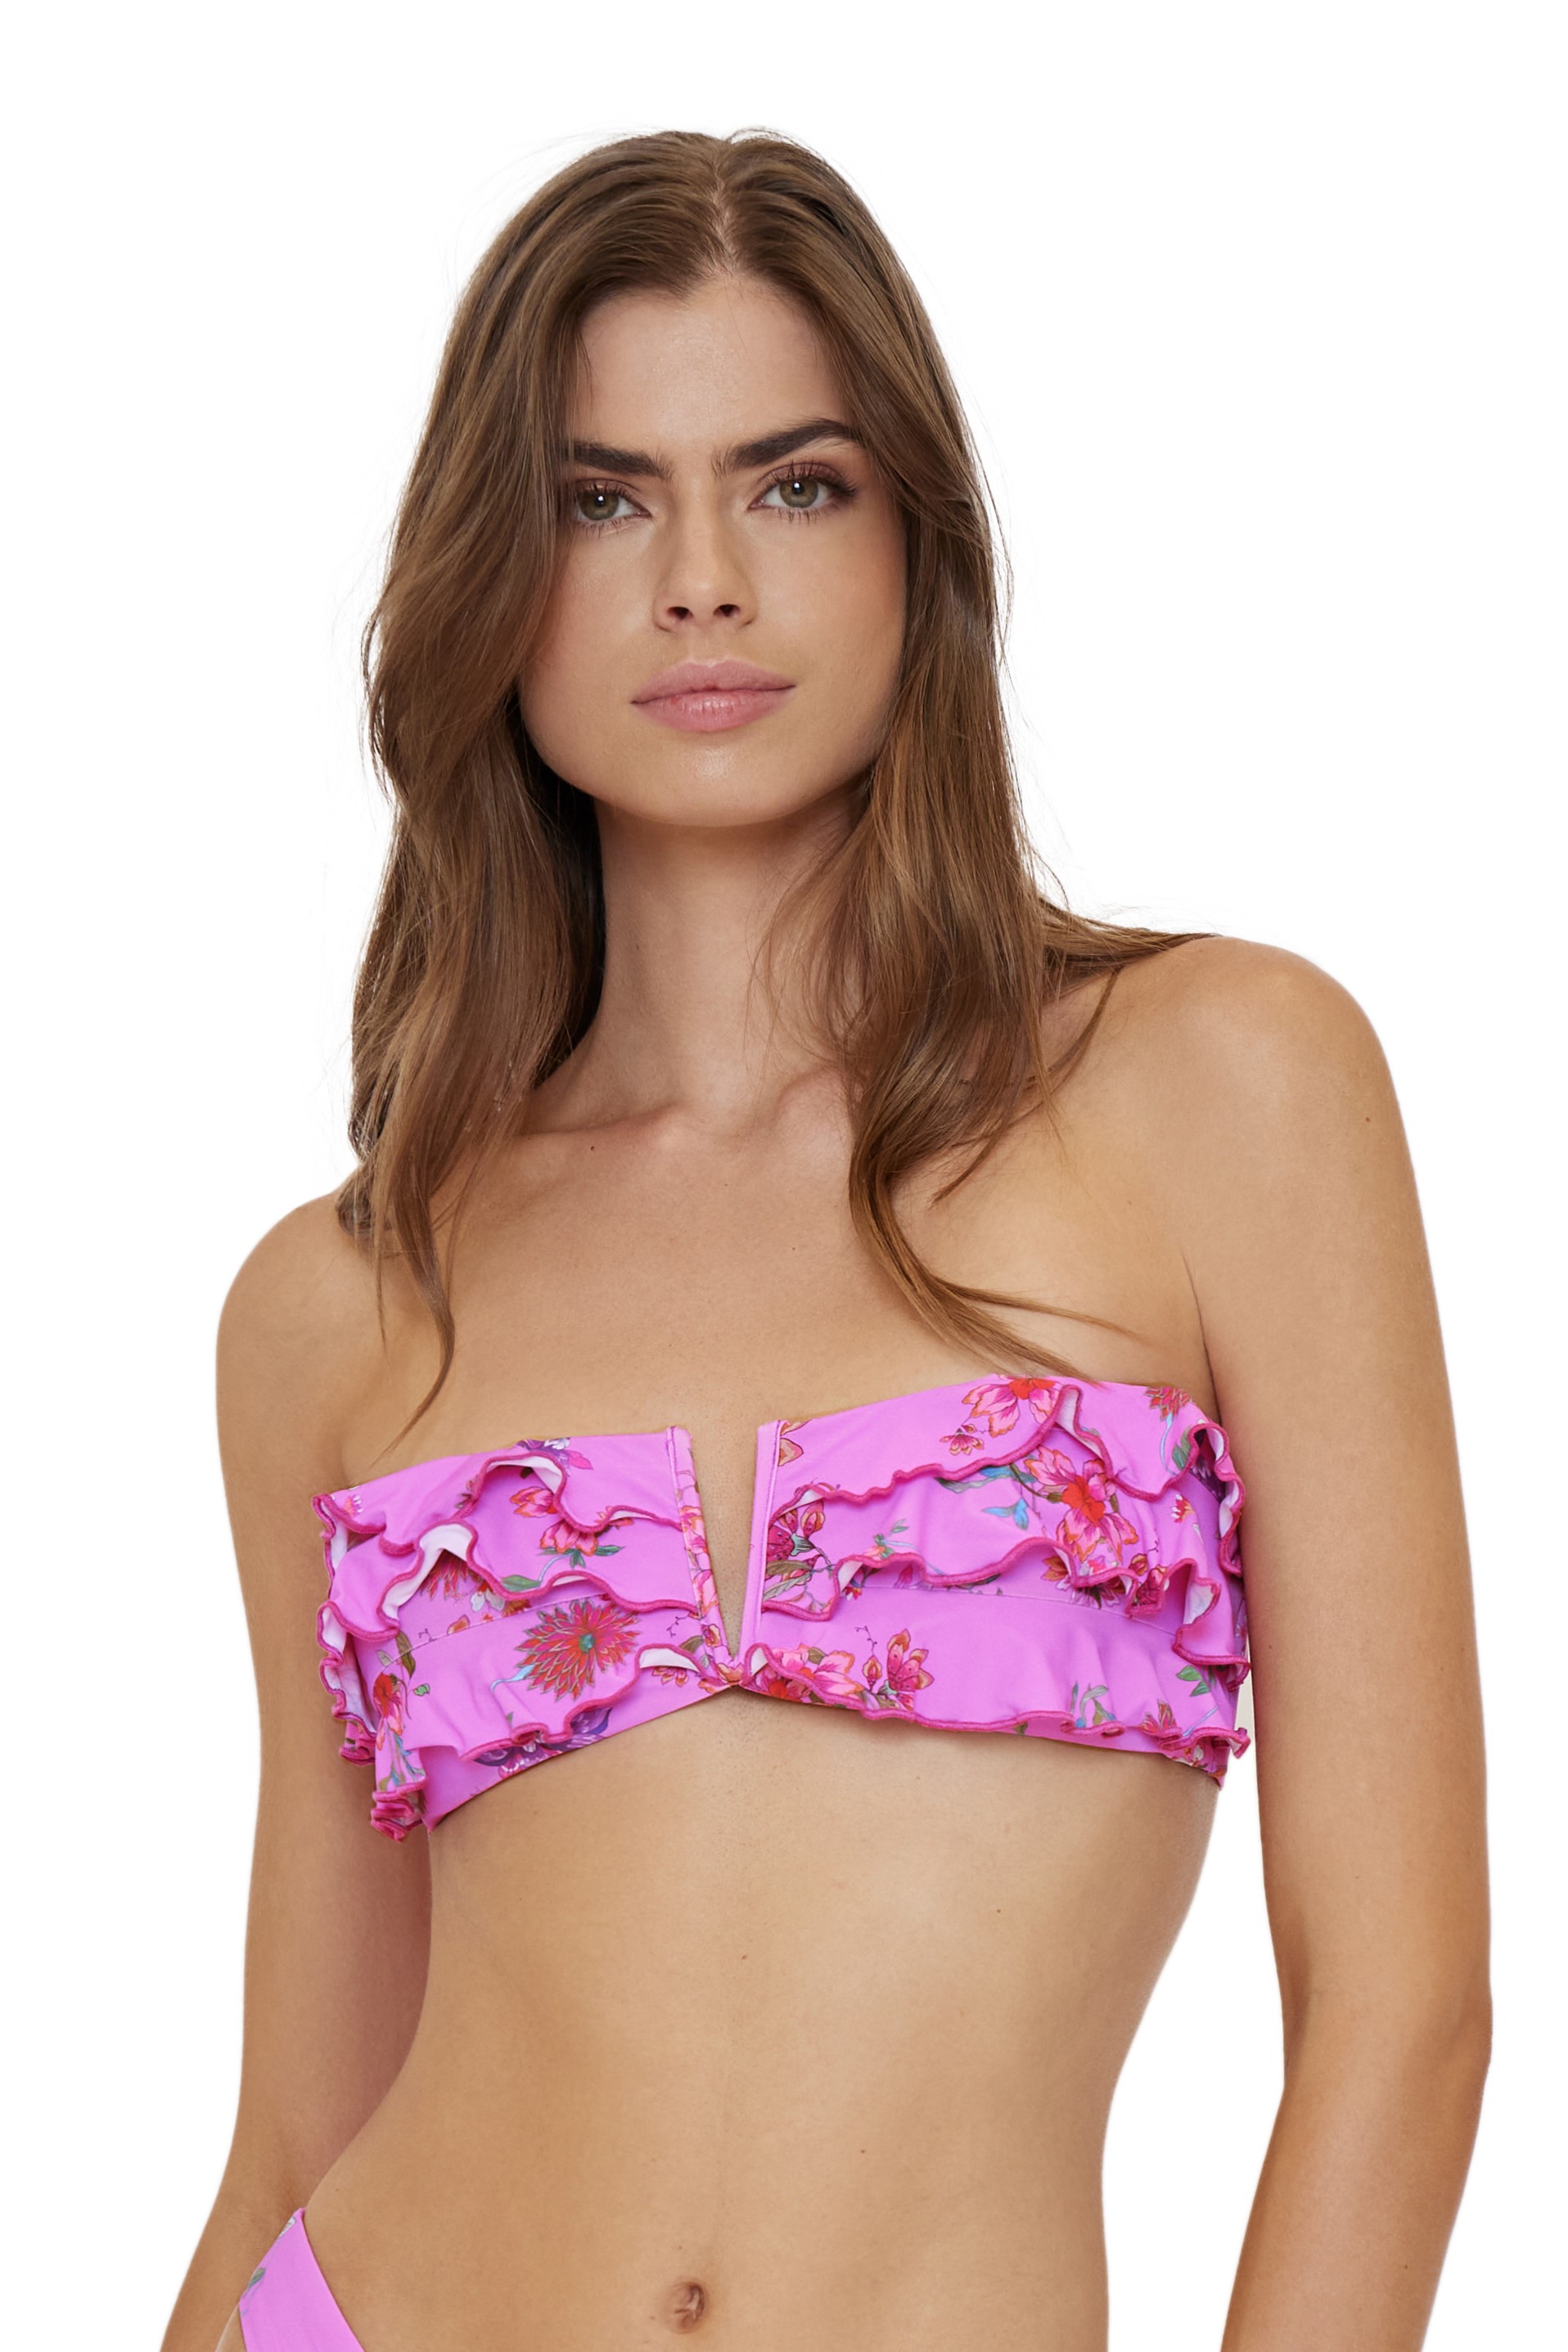 Pilyq Swim Garden Pink Ruffle Bandeau Bikini Top